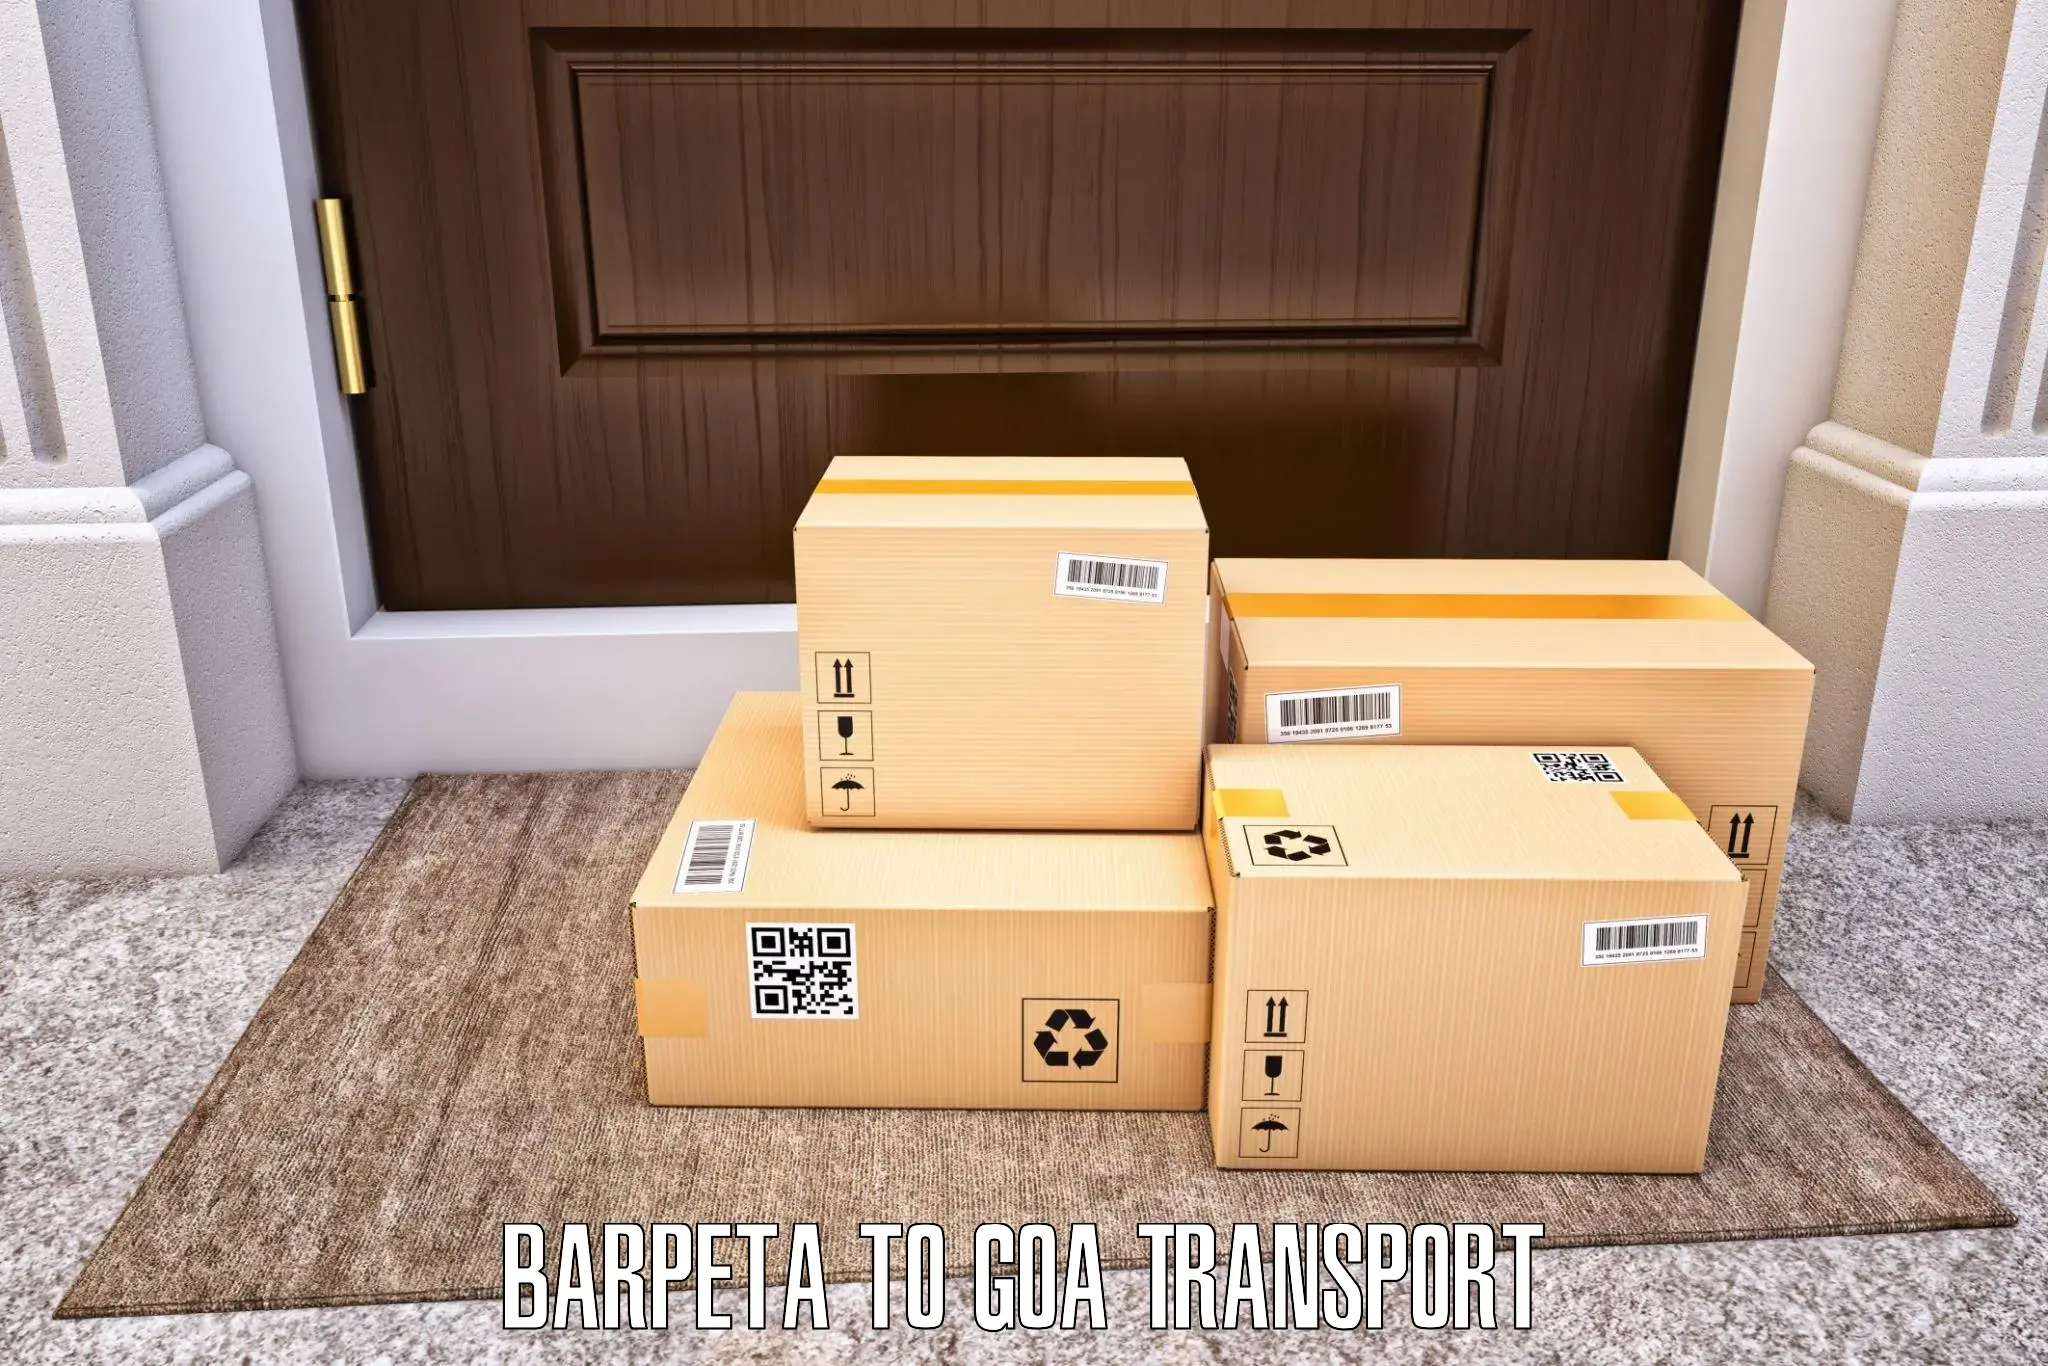 Shipping partner Barpeta to Goa